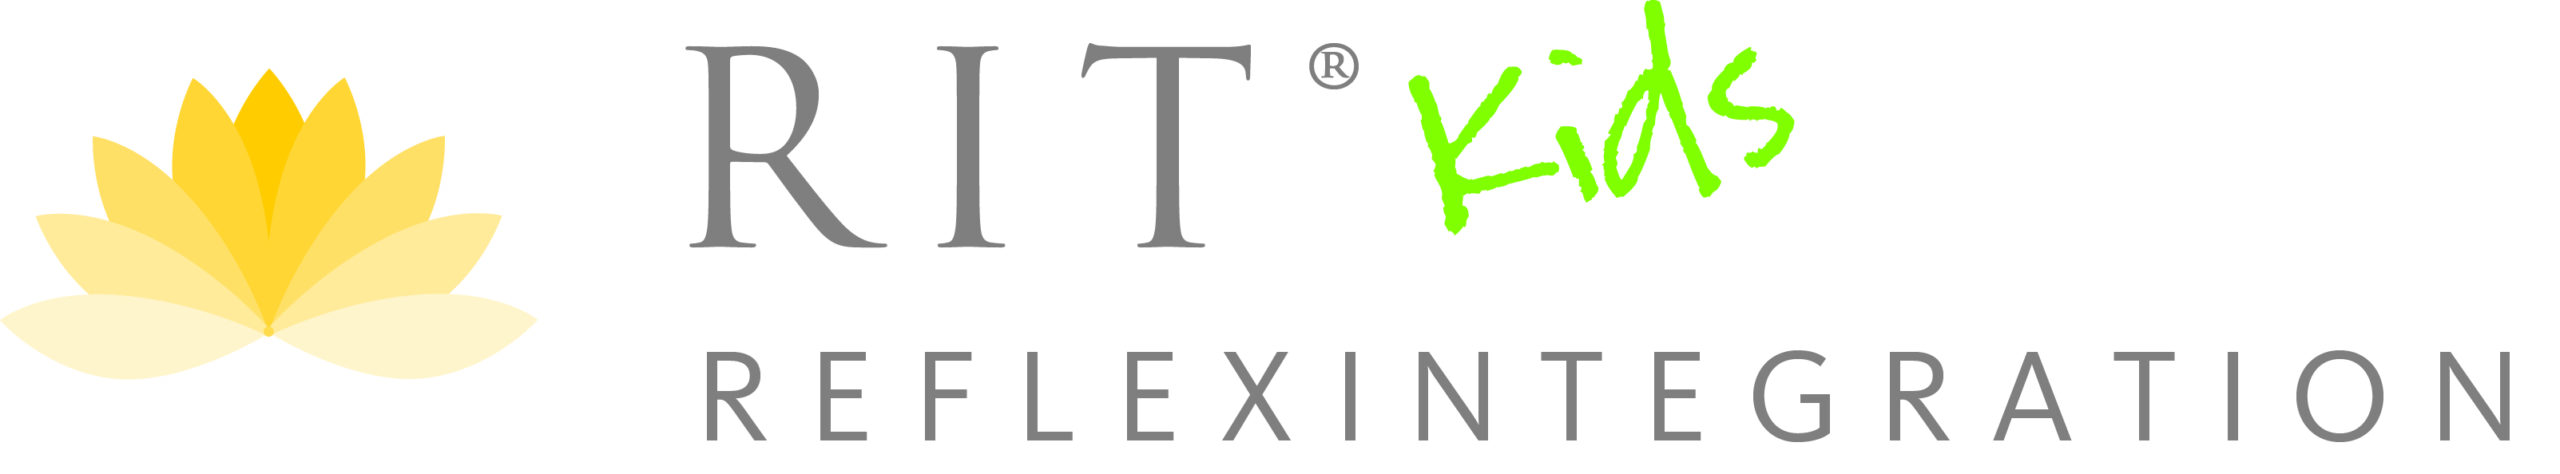 Logo Reflexintegration kids files